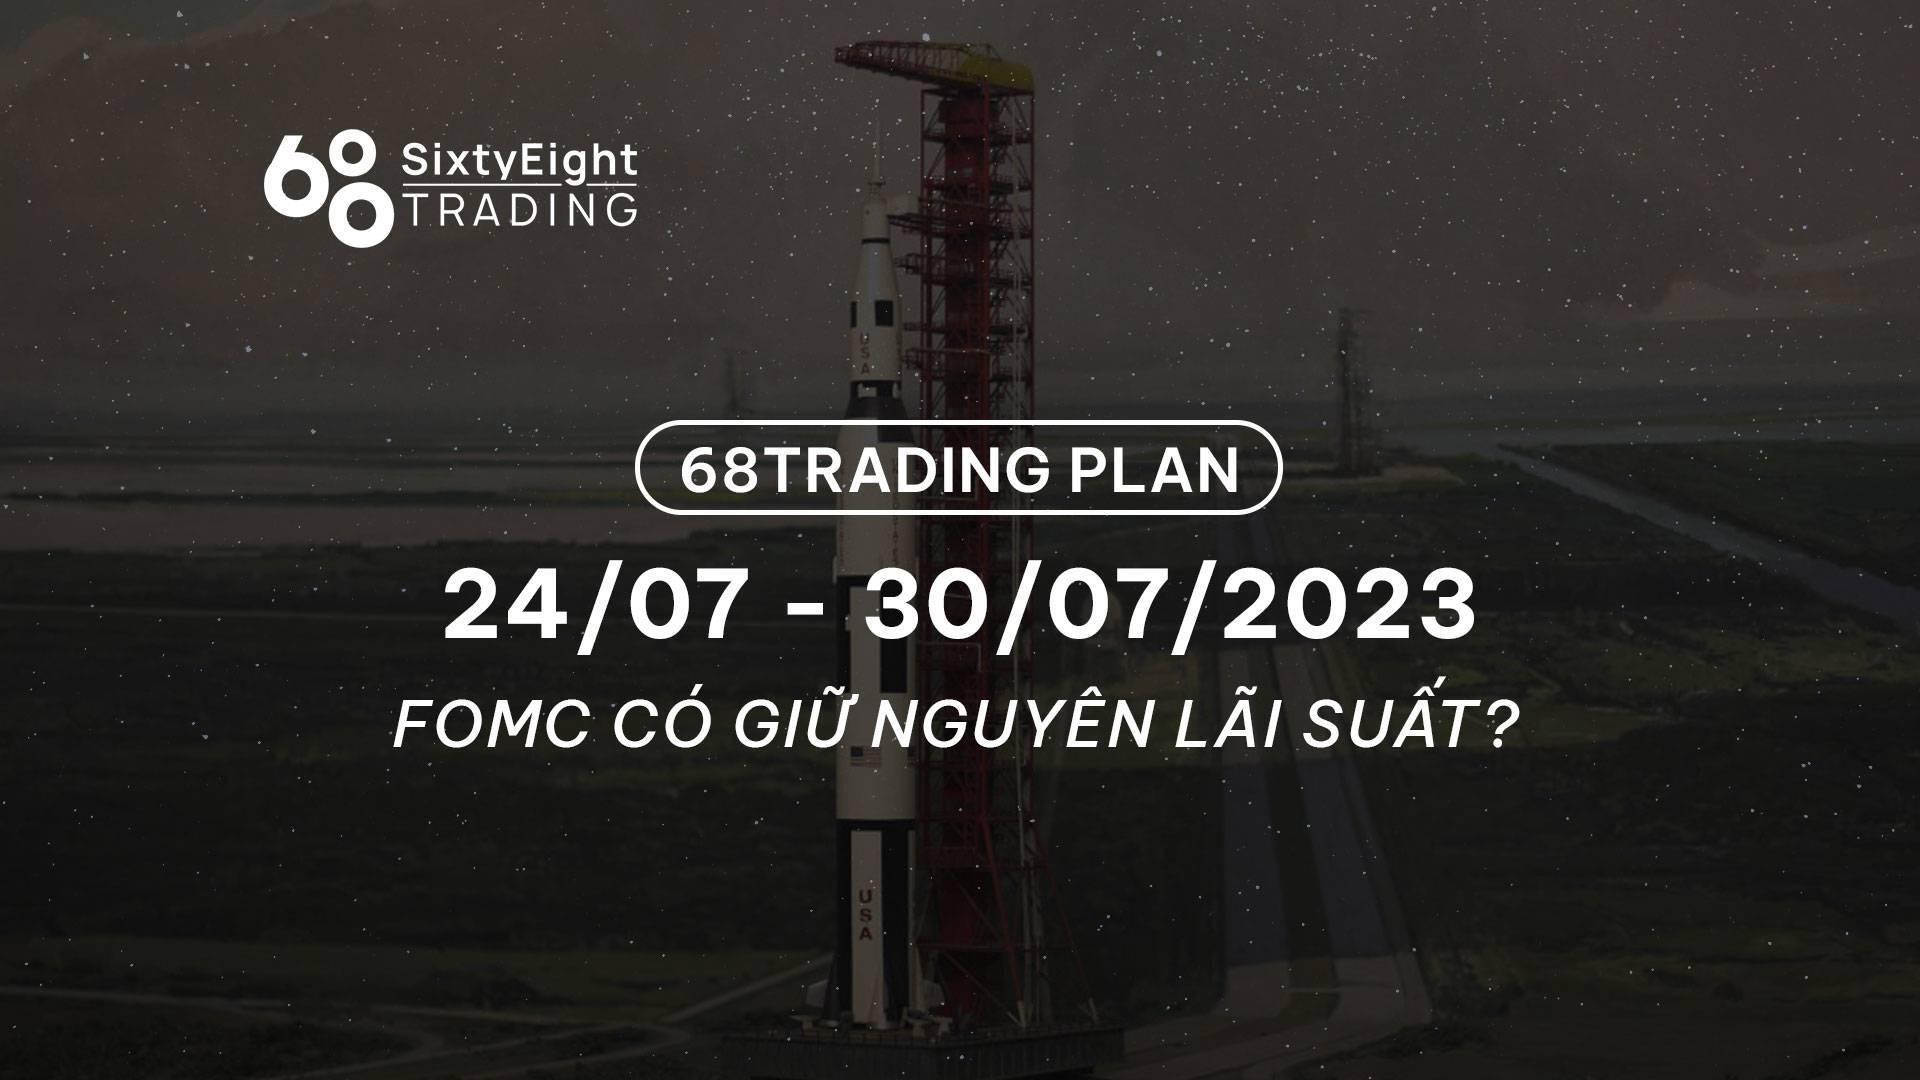 68-trading-plan-2407-30072023-fomc-co-giu-nguyen-lai-suat